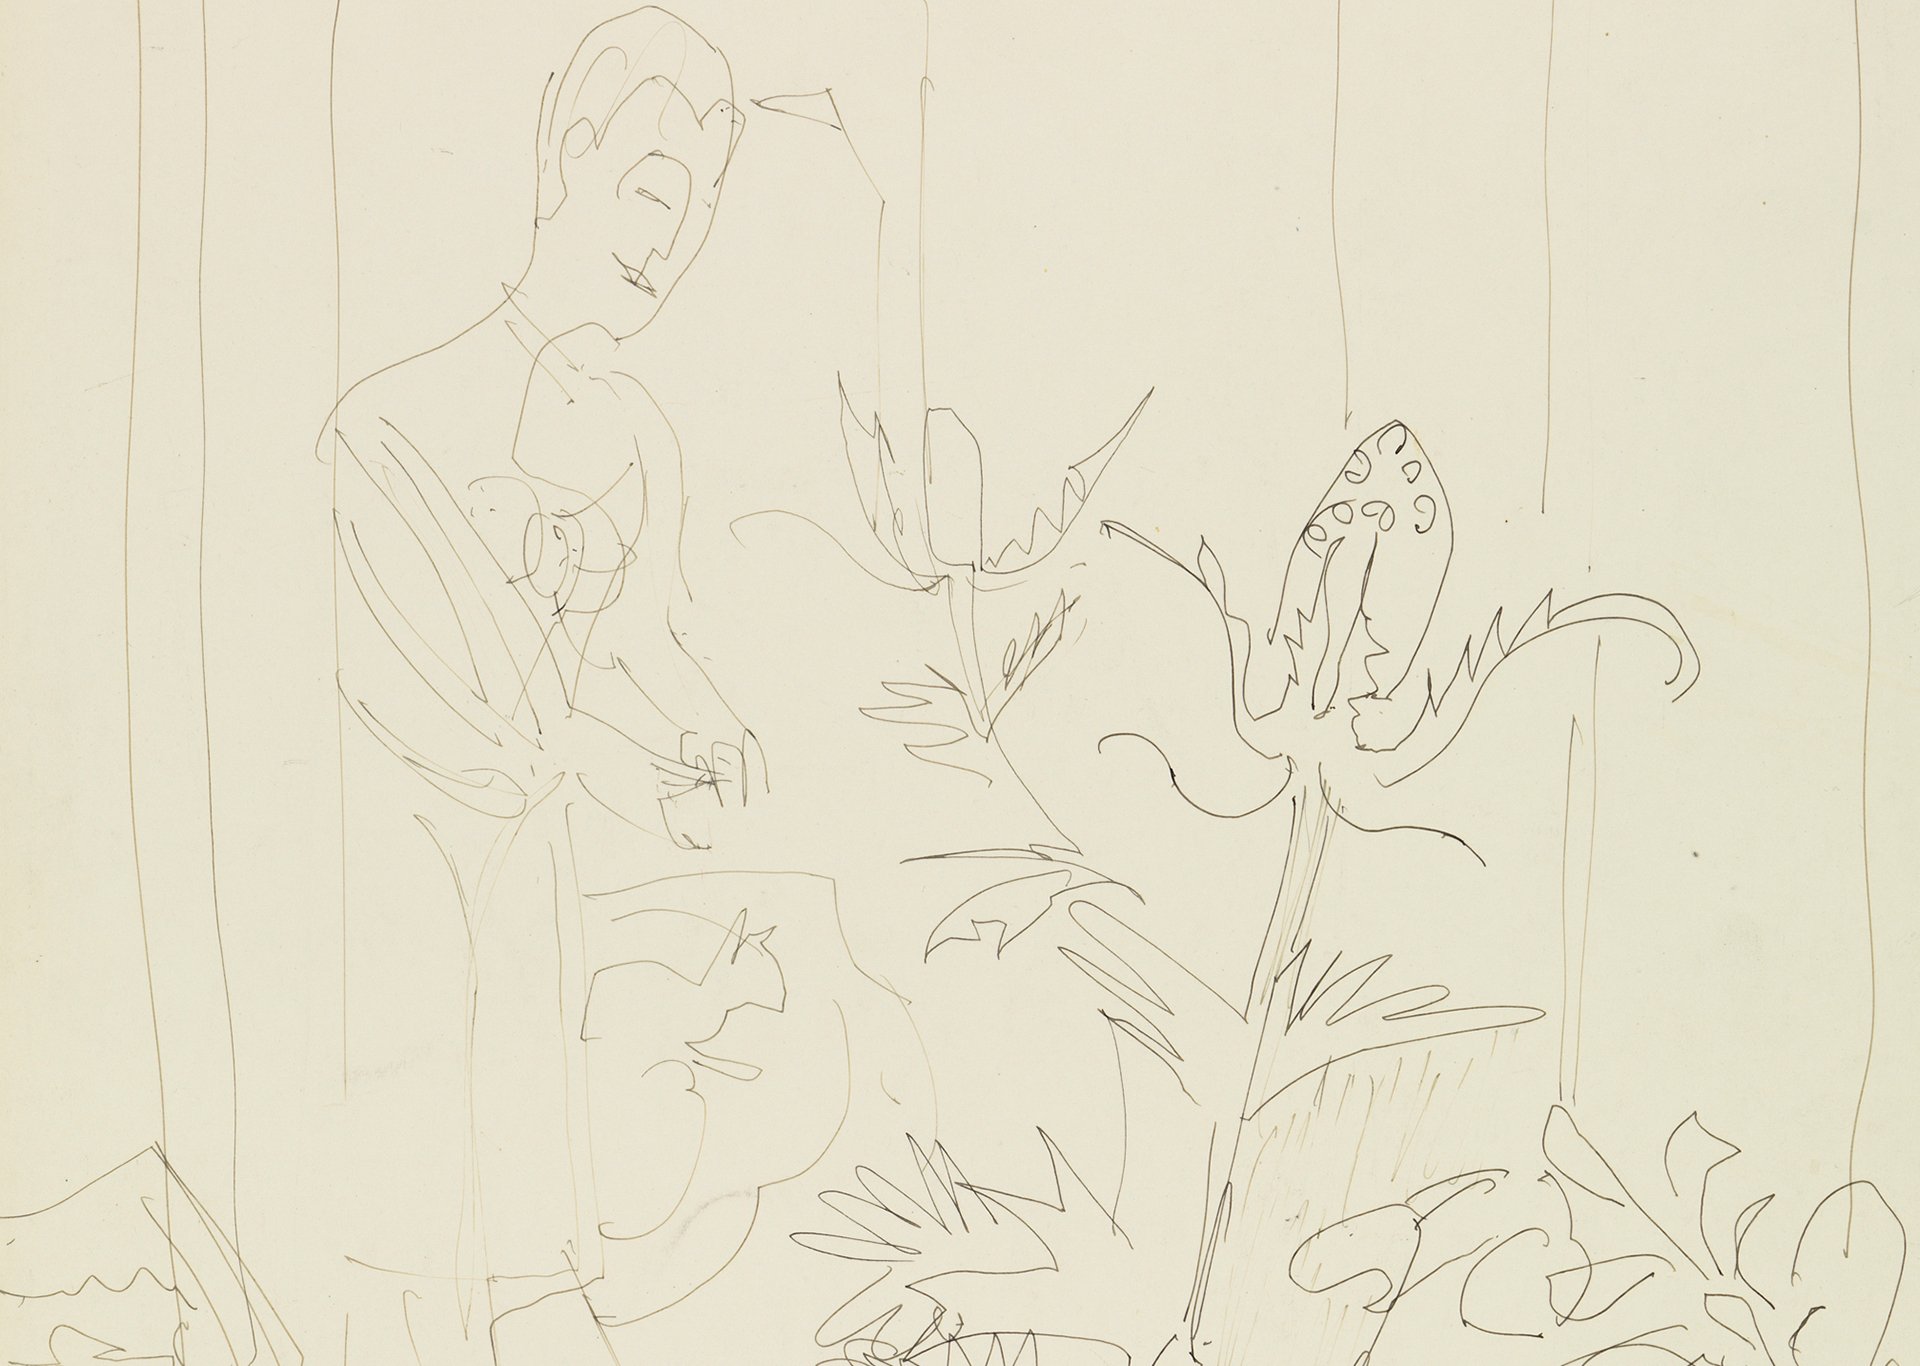 Ausschnitt aus der Zeichnung "Interieur mit Blumenvase, Frau und Katze" von Ernst Ludwig Kirchner, entstanden um 1934 aus der Sammlung der Kunsthalle Karlsruhe. Es zeigt einen Mann der vor Pflanzen steht.